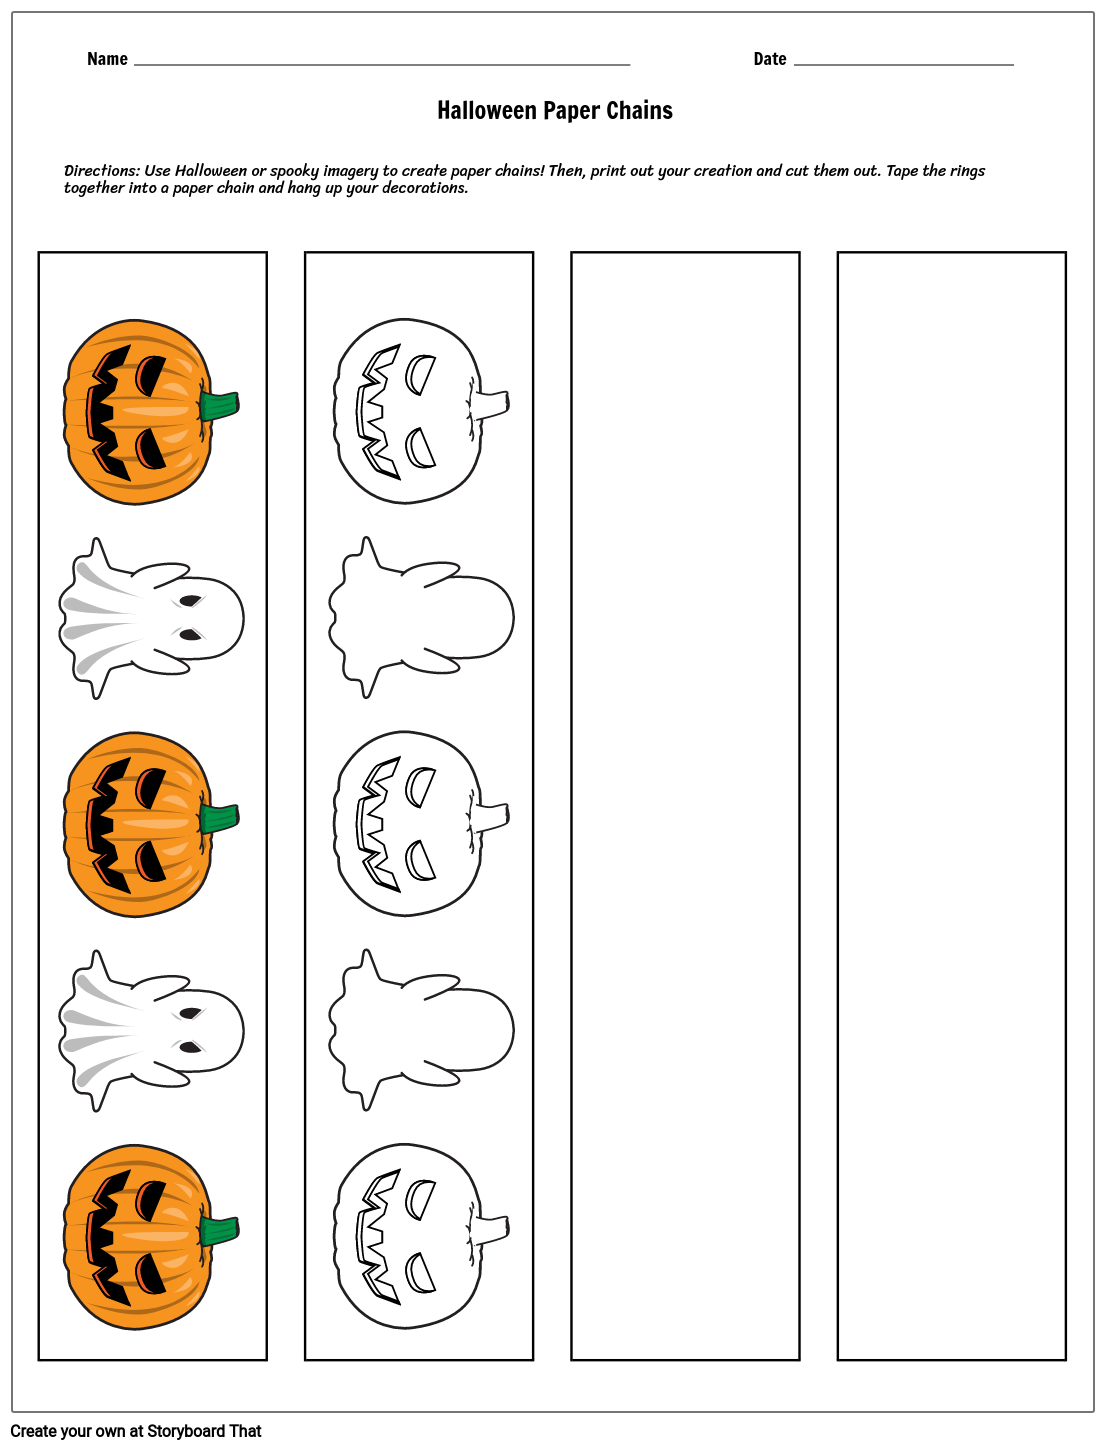 halloween-paper-chains-halloween-activities-for-kids